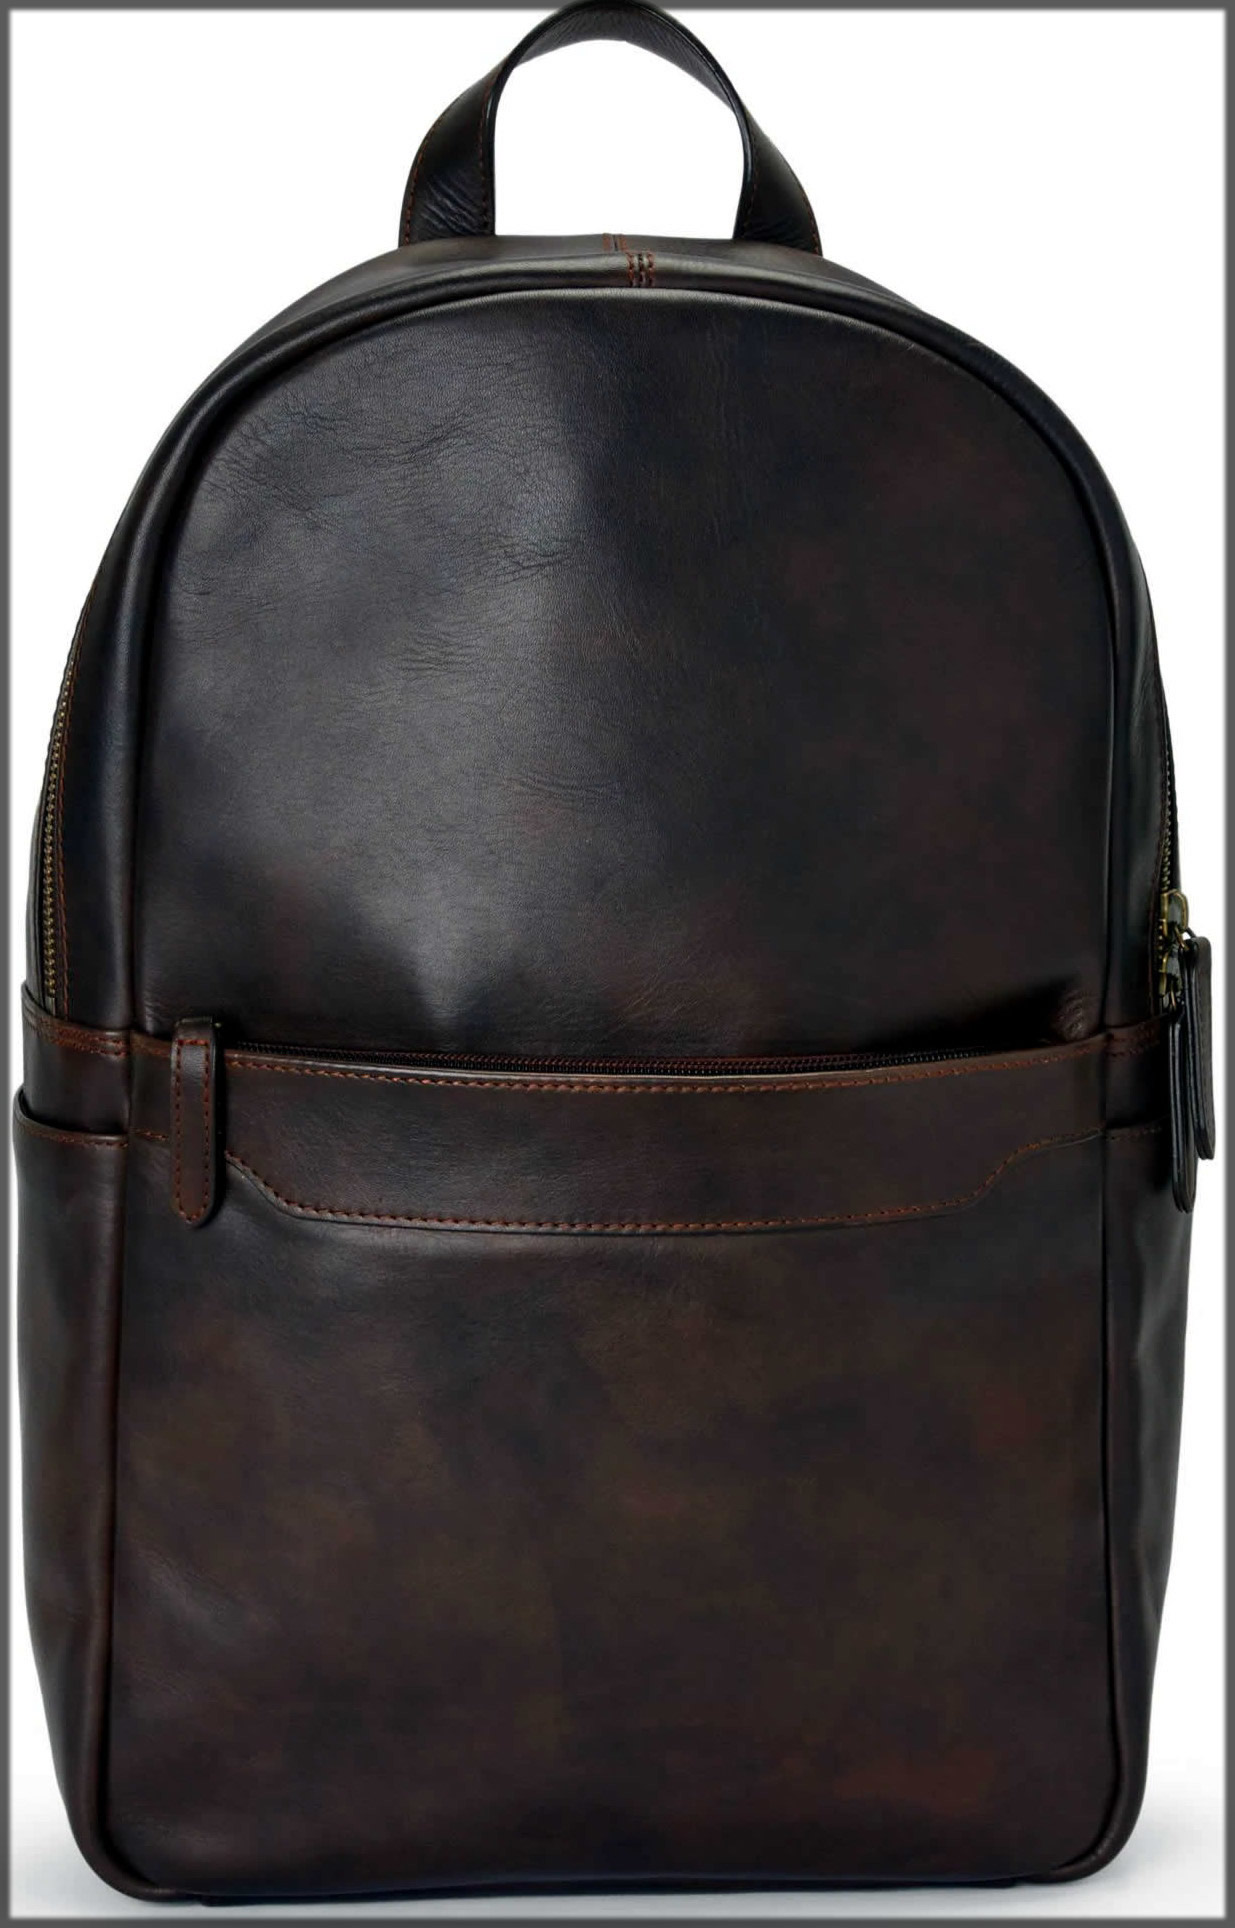 Dark brown backpack